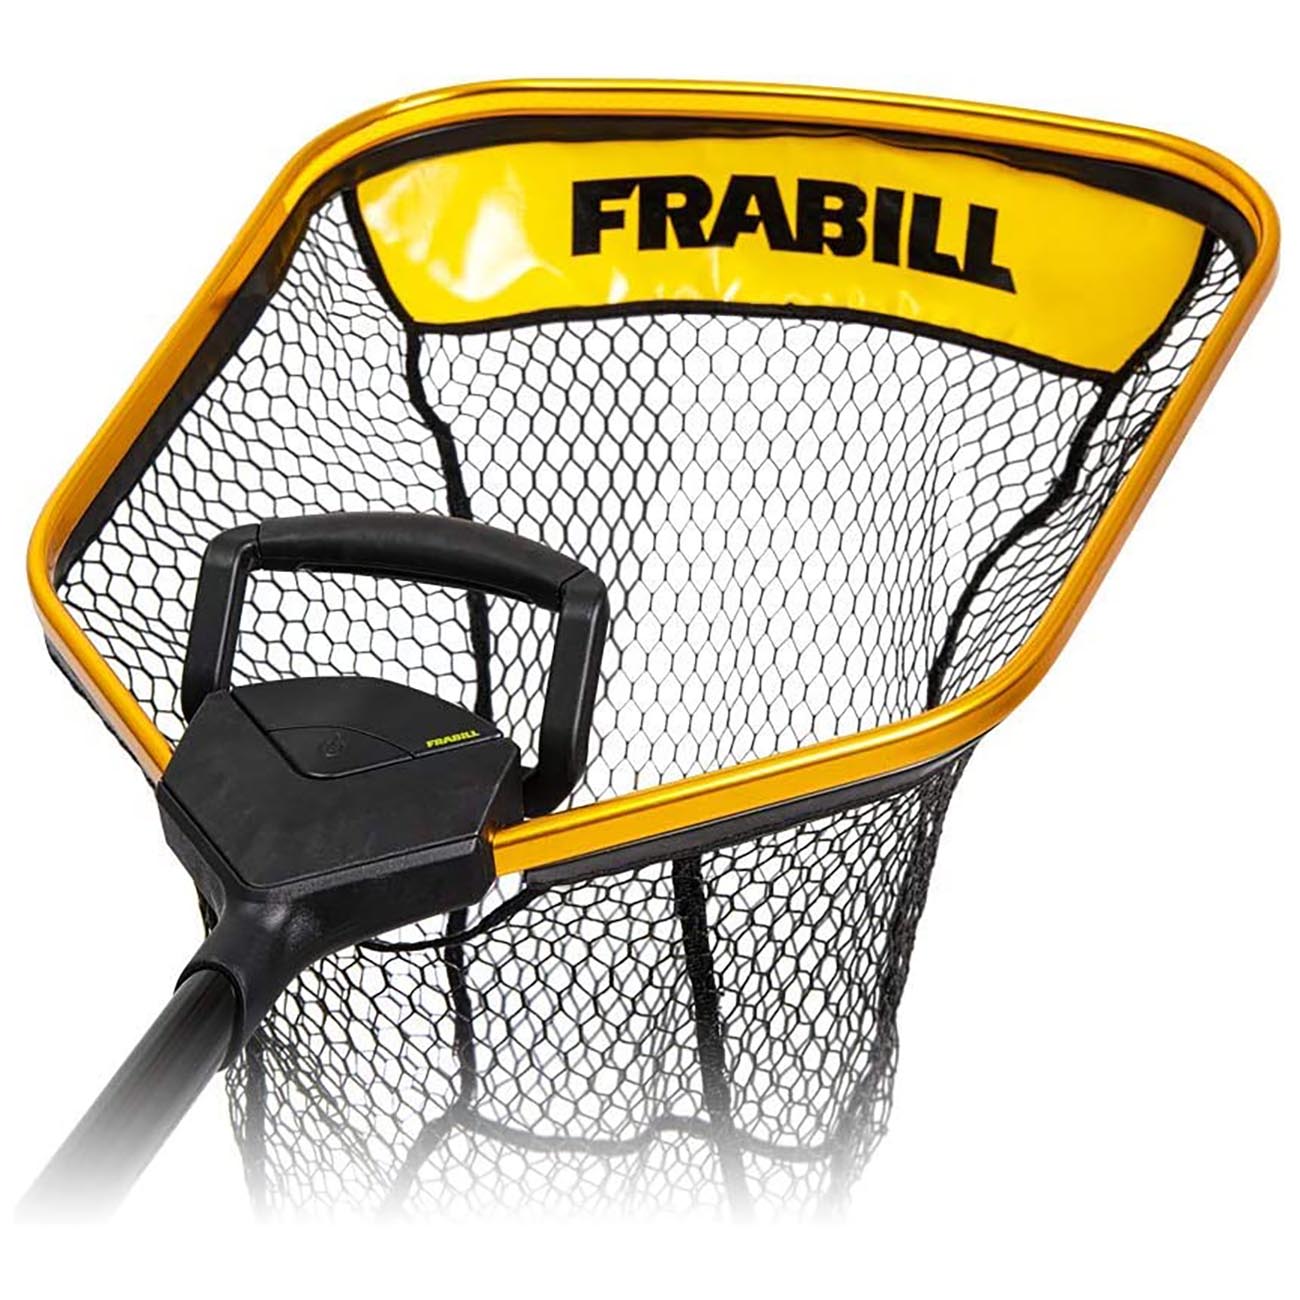 Frbnx18e Frabill Trophy Haul Power Extend Fishing Net